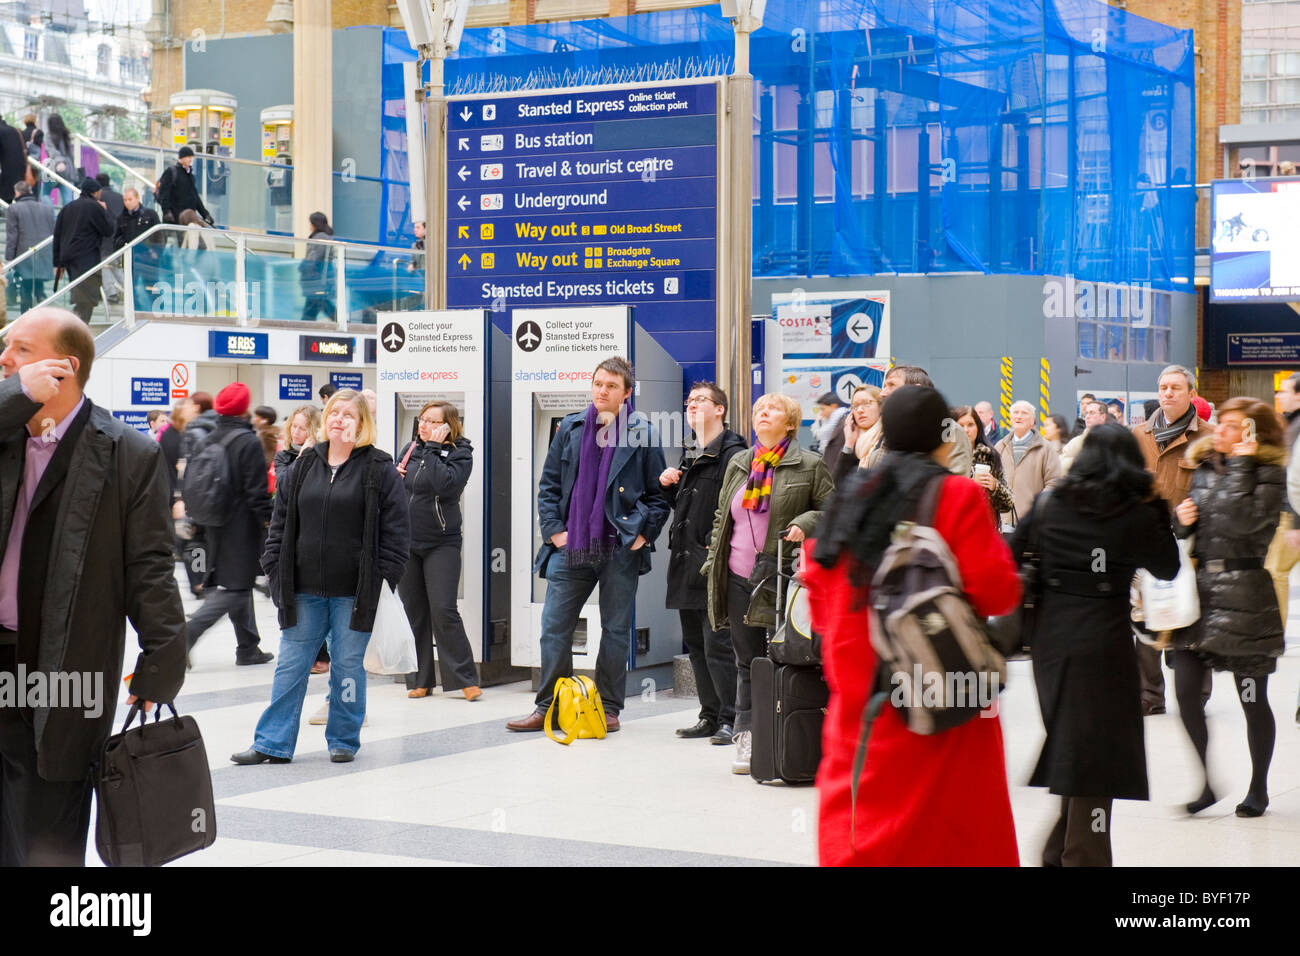 Les banlieusards de London Liverpool Street Station passagers foule chercher le départ des arrivées à bord en attente de la formation de certains sur la cellule ou téléphones mobiles Banque D'Images